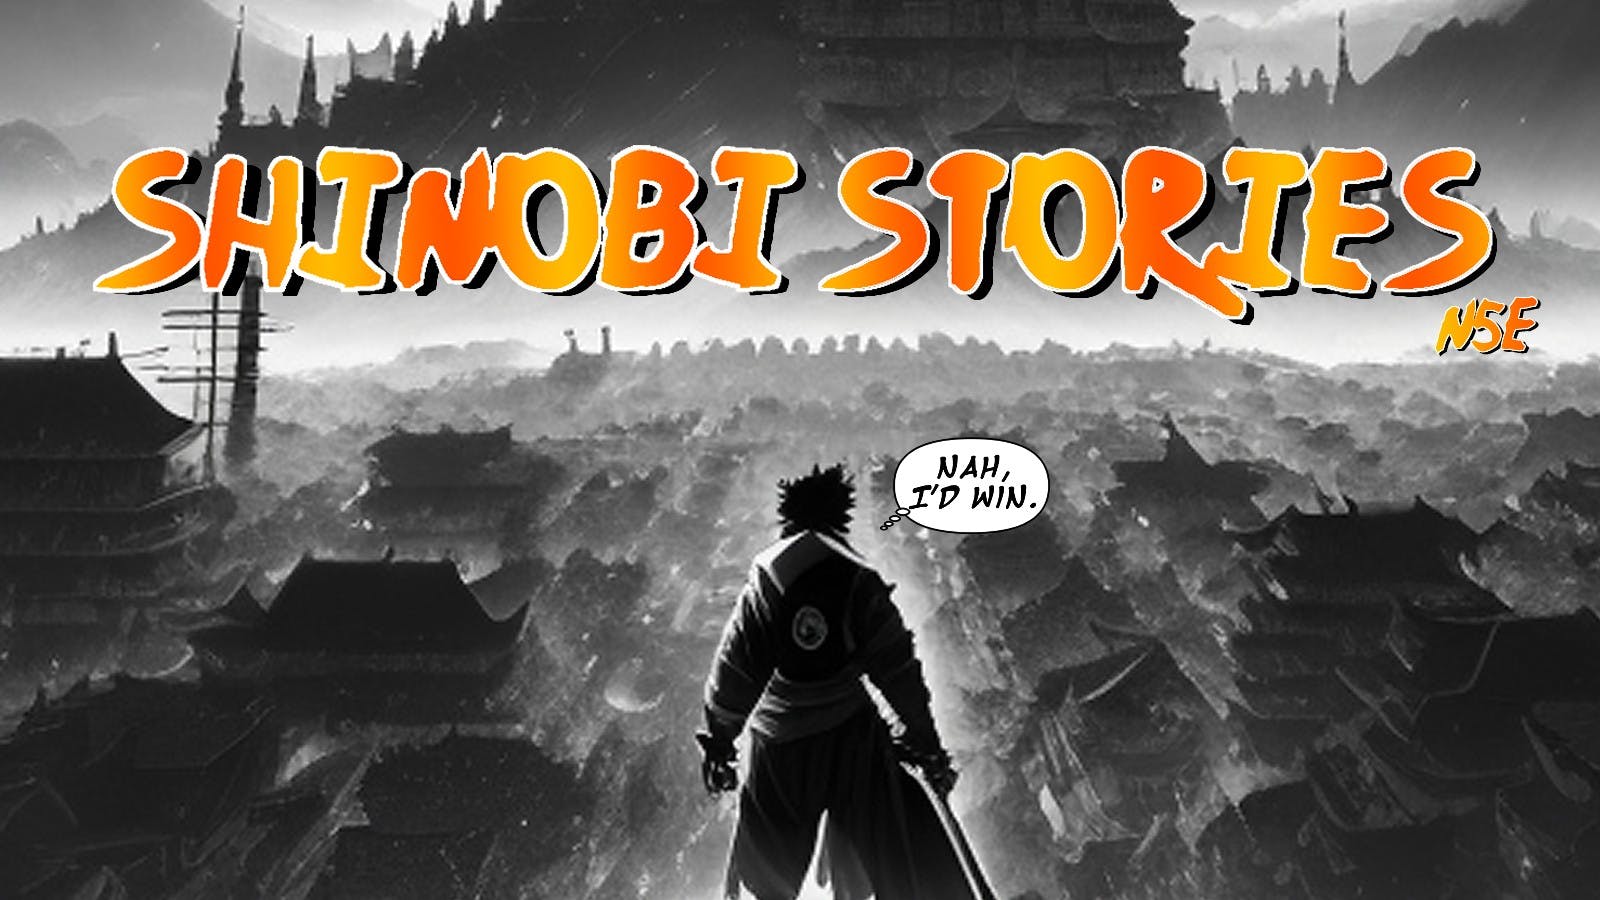 🟡 Shinobi Stories: A NARUTO 5e Game 🟠